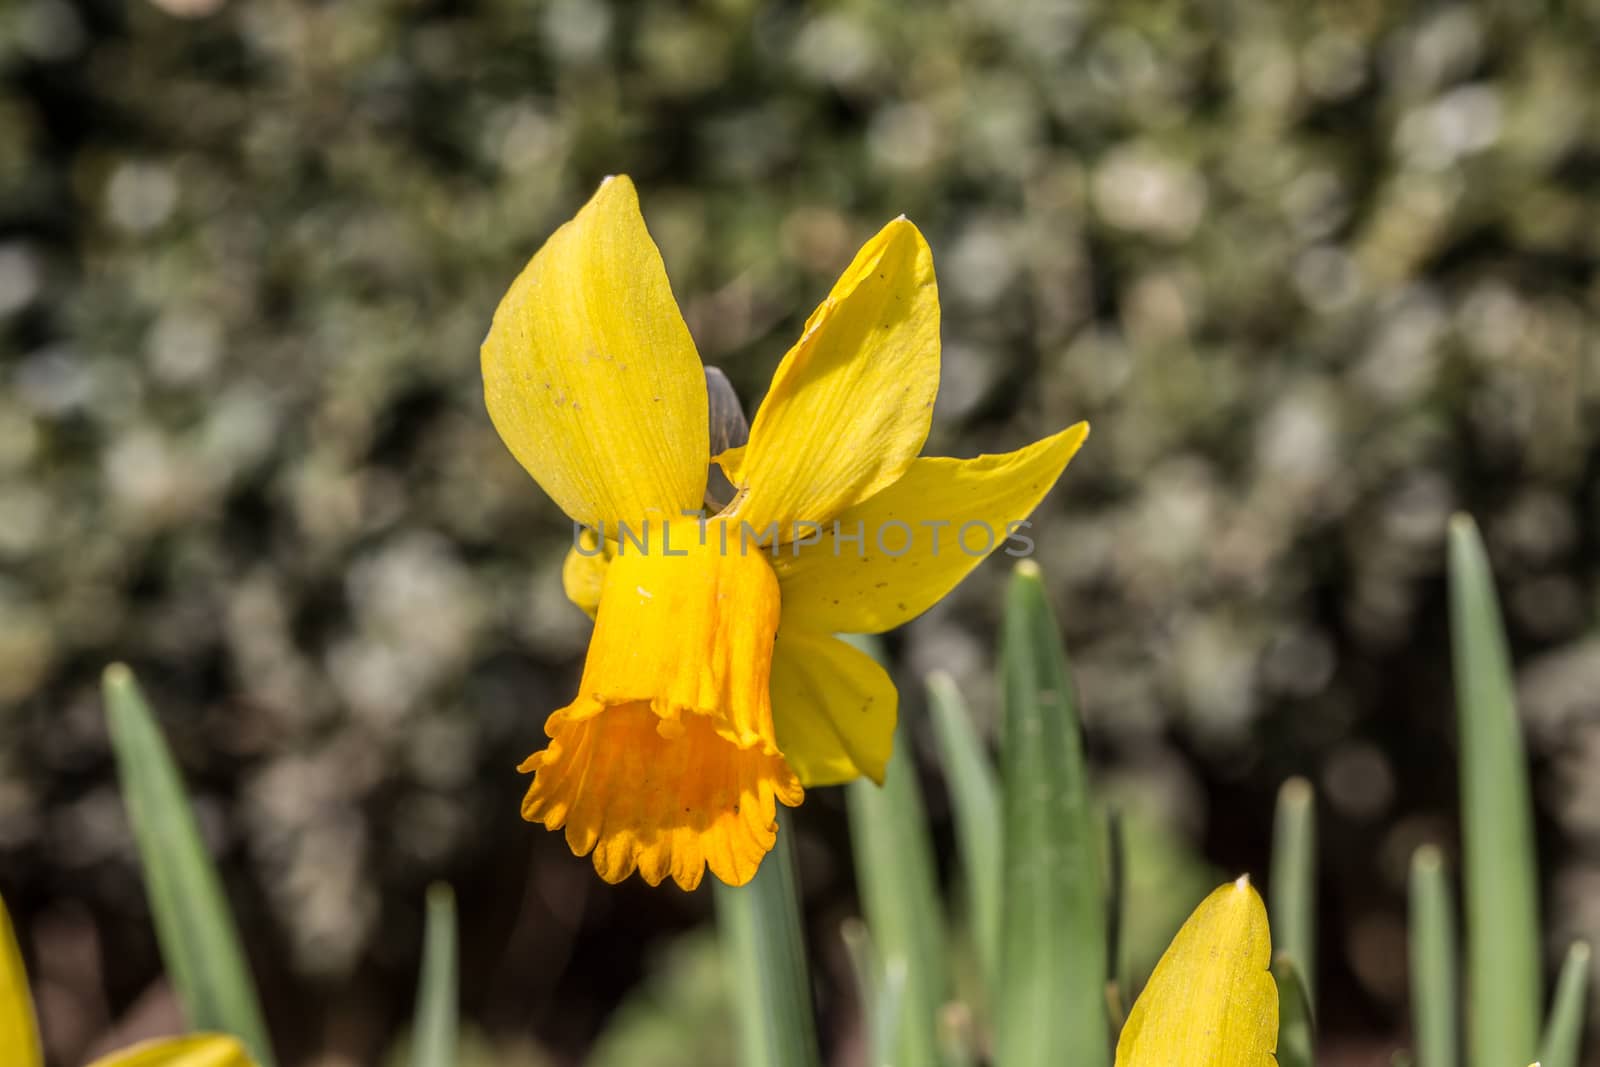 yellow daffodils or daffodils in spring